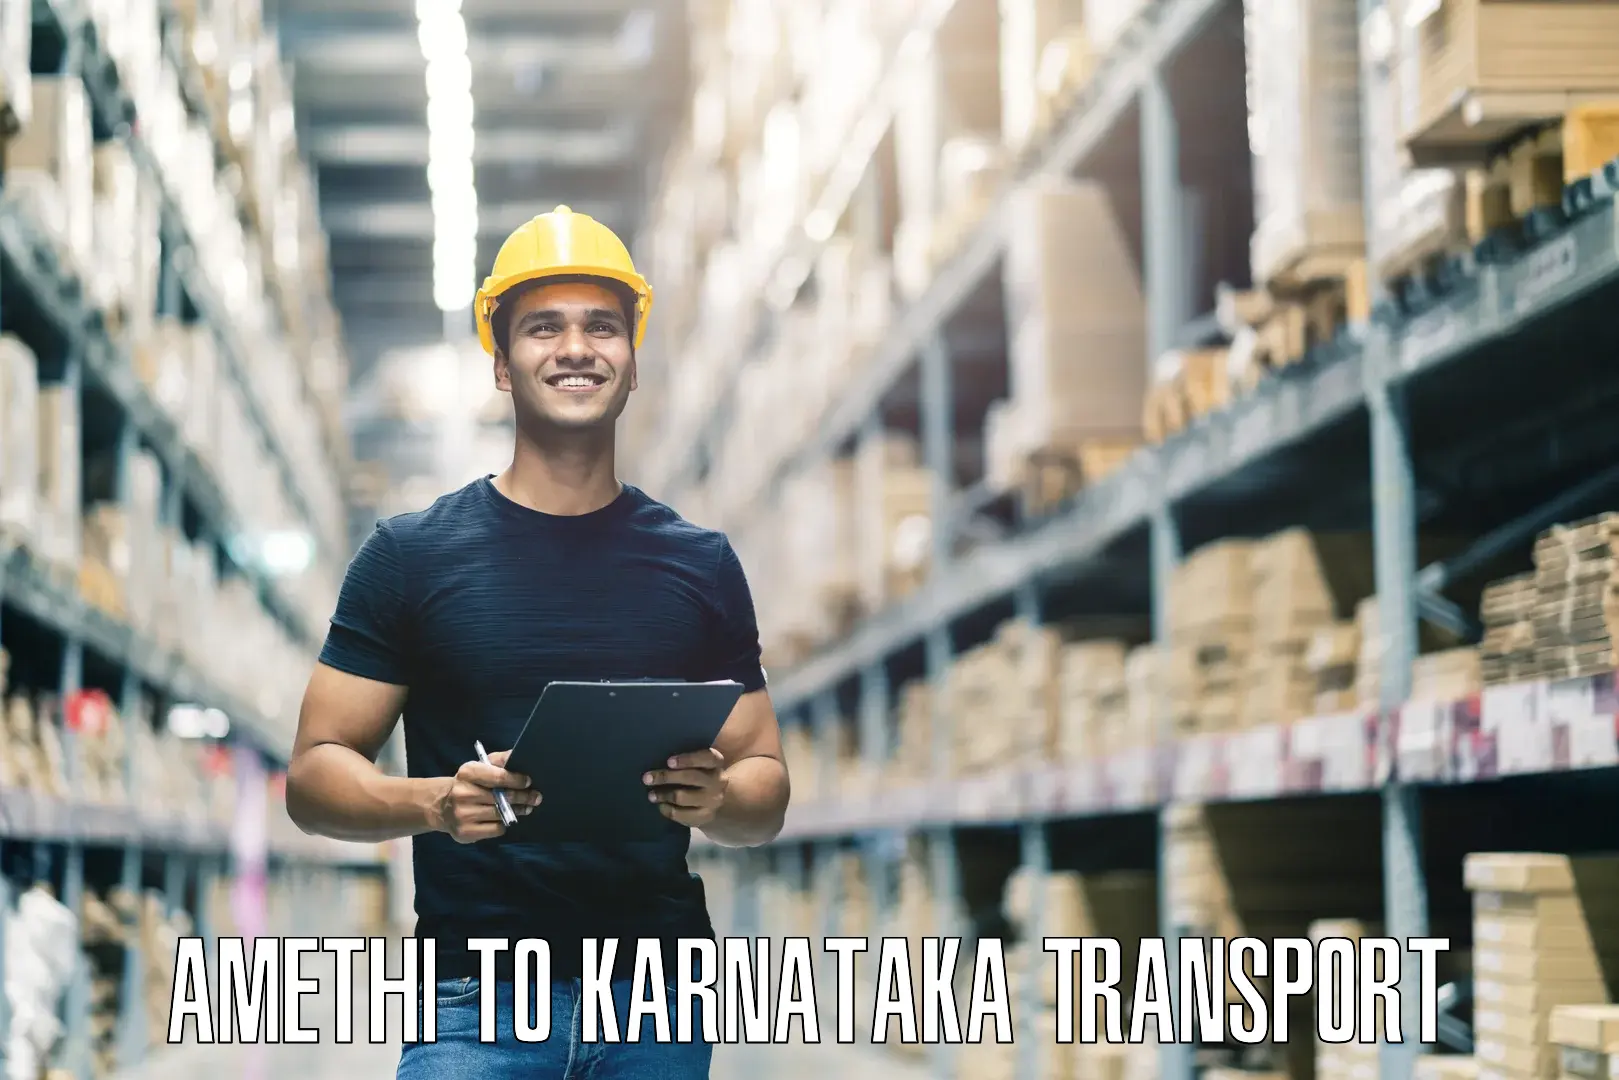 Pick up transport service Amethi to Kanjarakatte